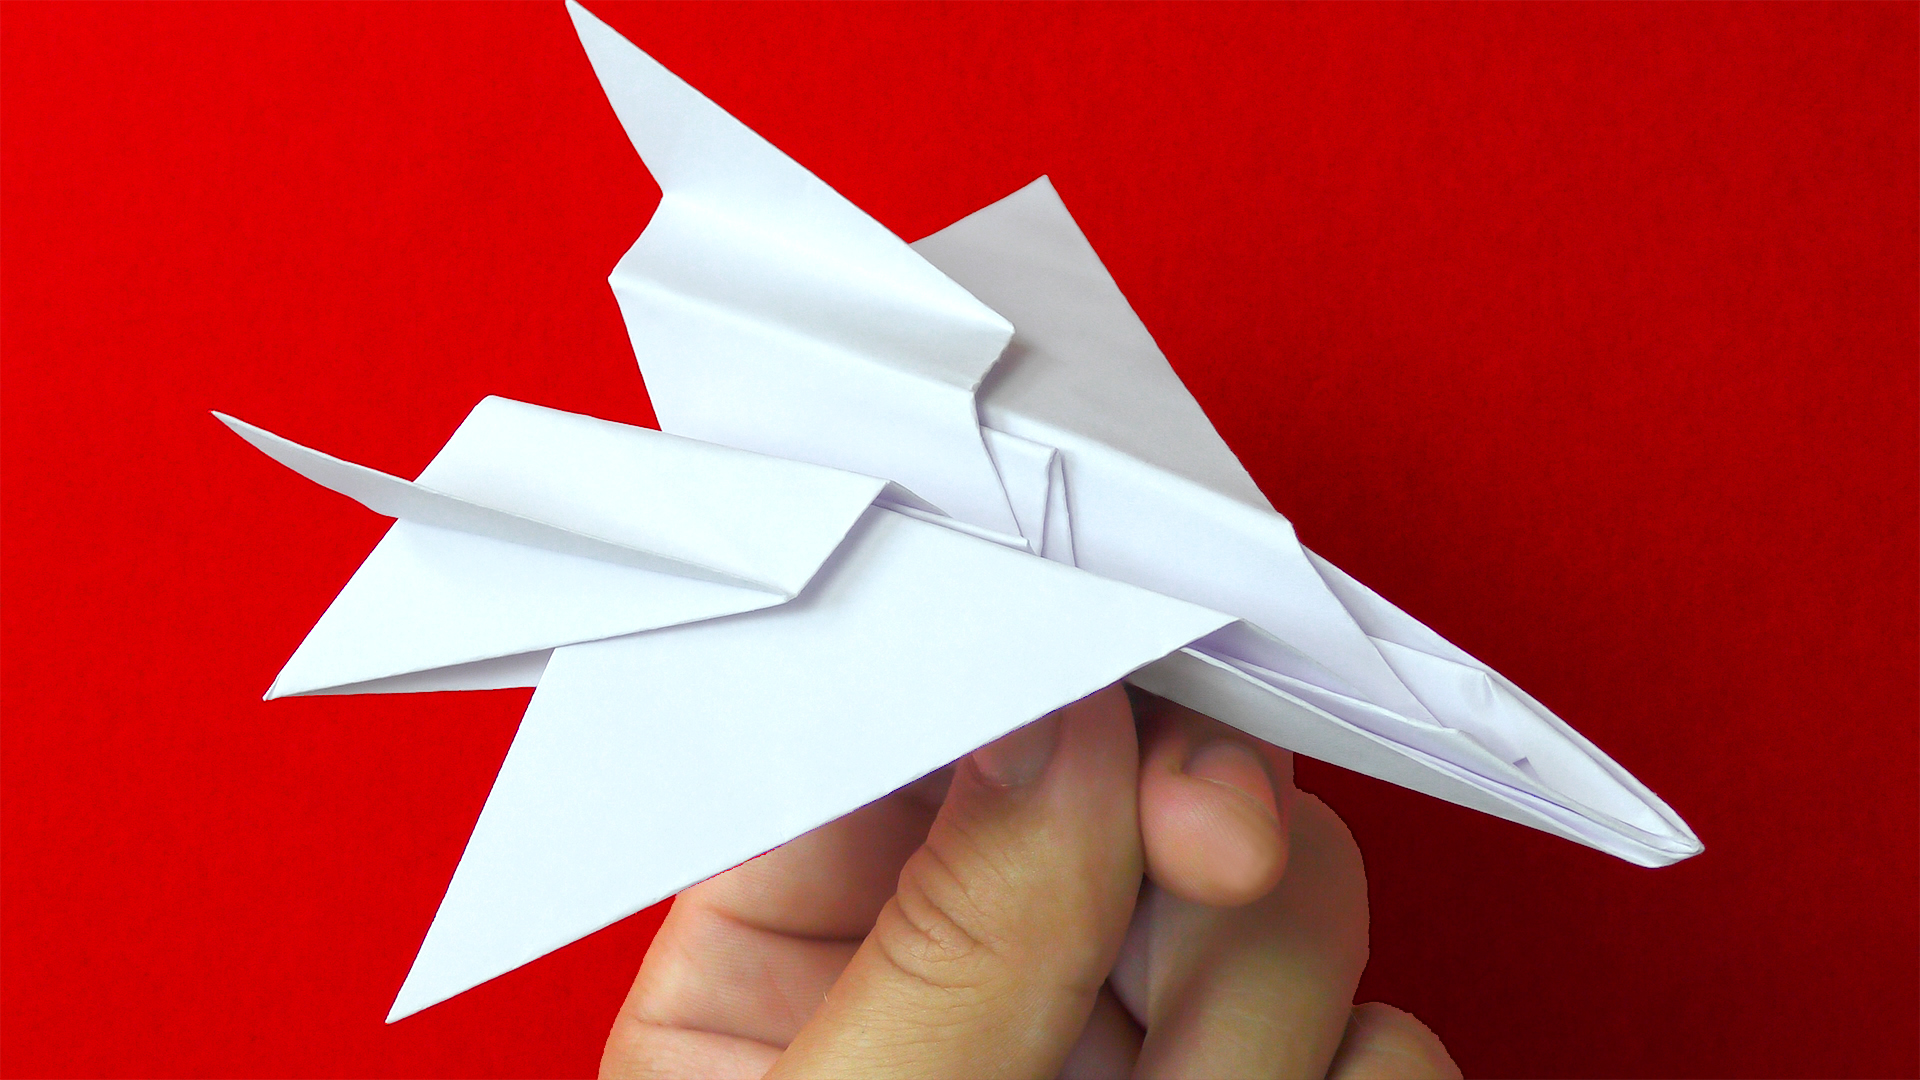 Как сделать оригами самолет из бумаги | Origami paper plane, Origami plane, Origami airplane